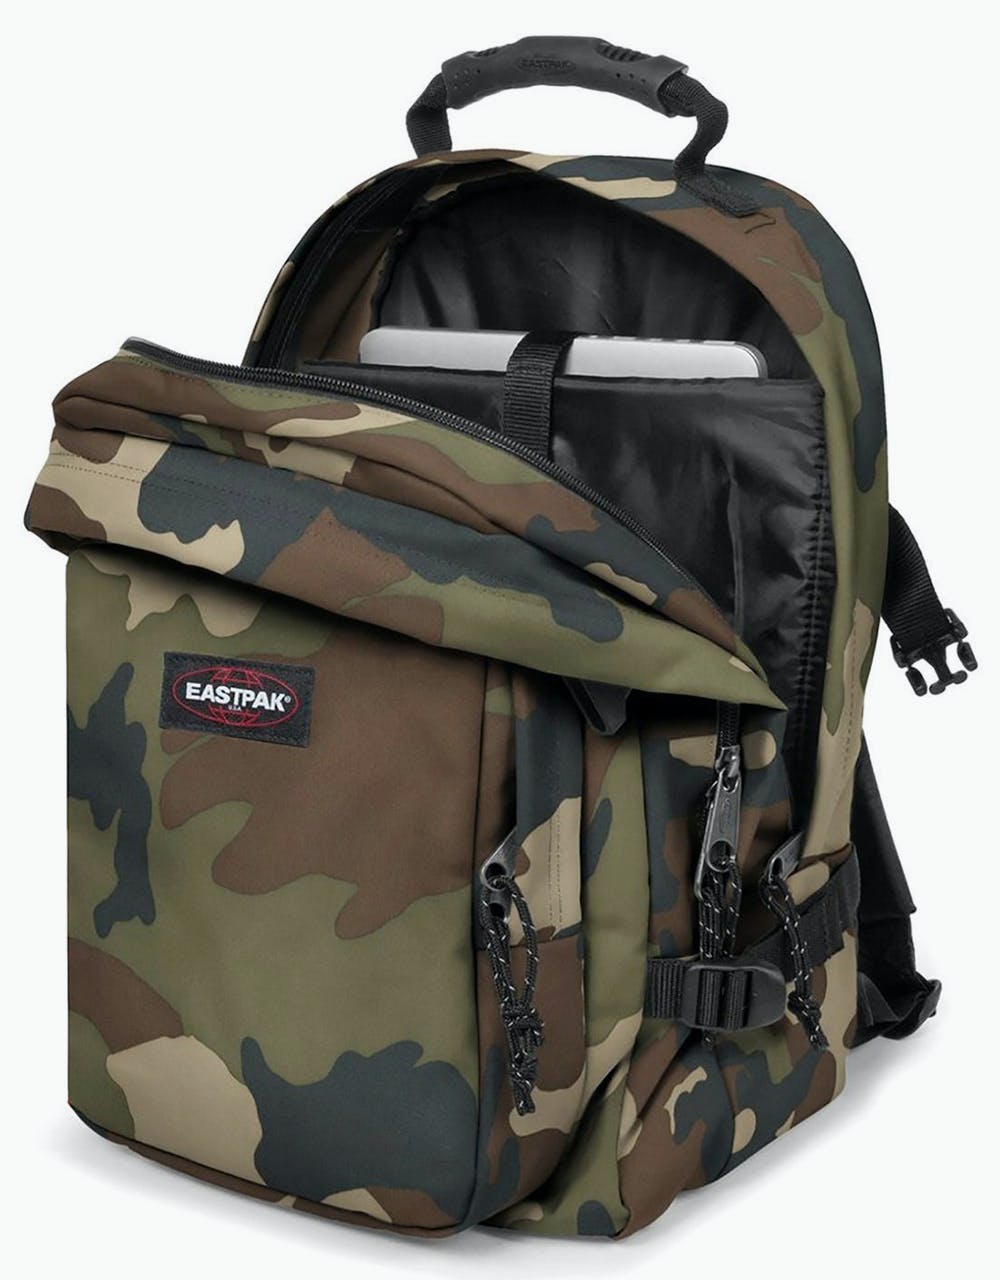 Eastpak Provider Backpack - Camo